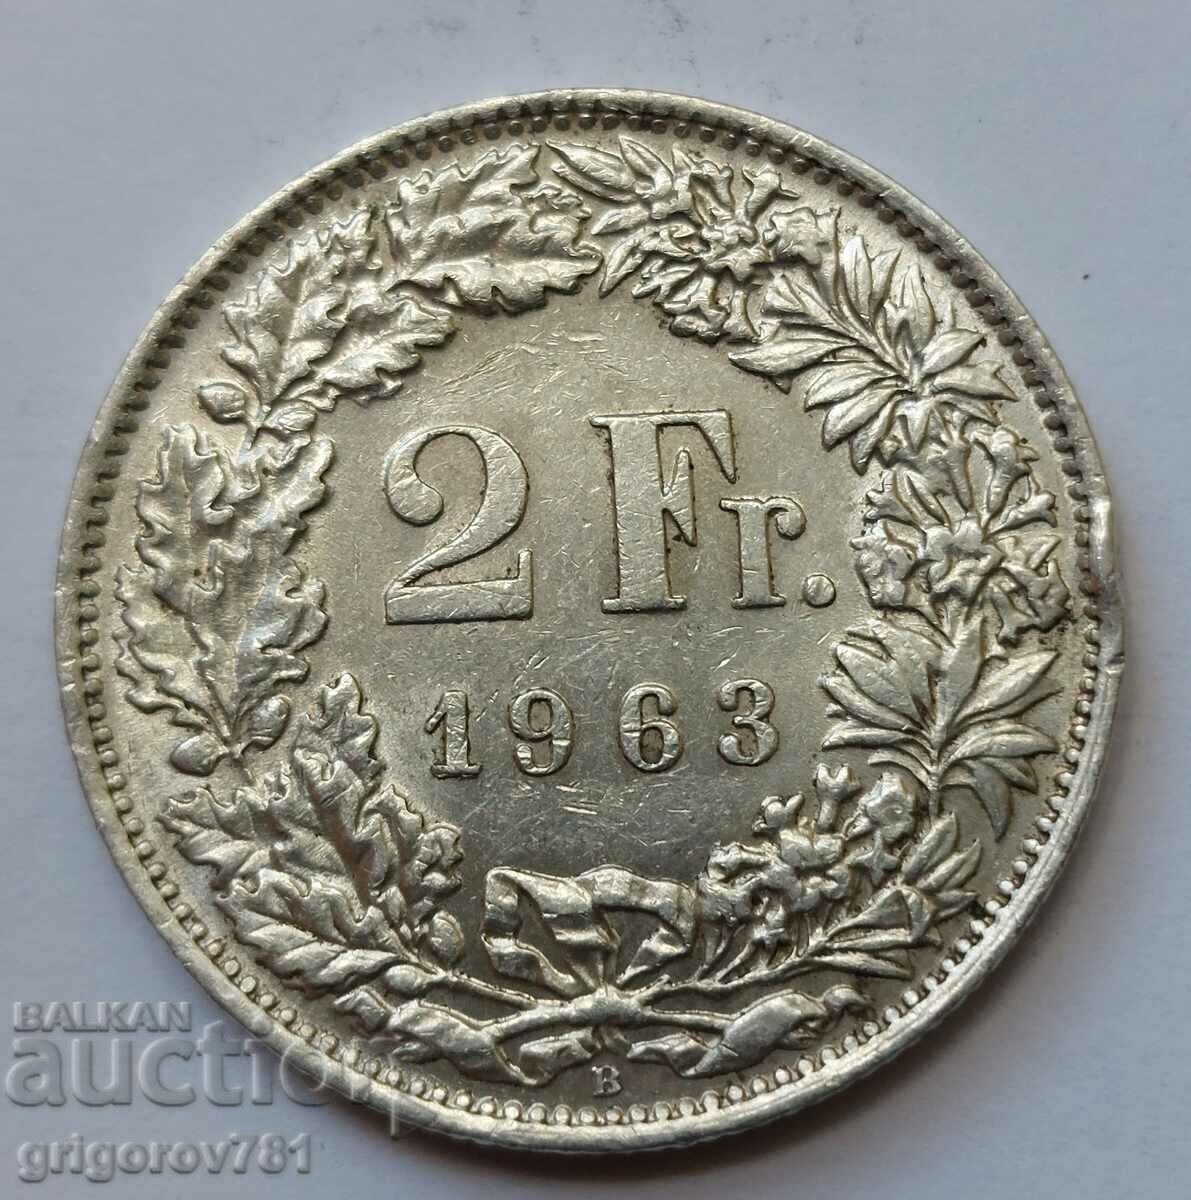 2 Franci Argint Elveția 1963 B - Monedă de argint #13